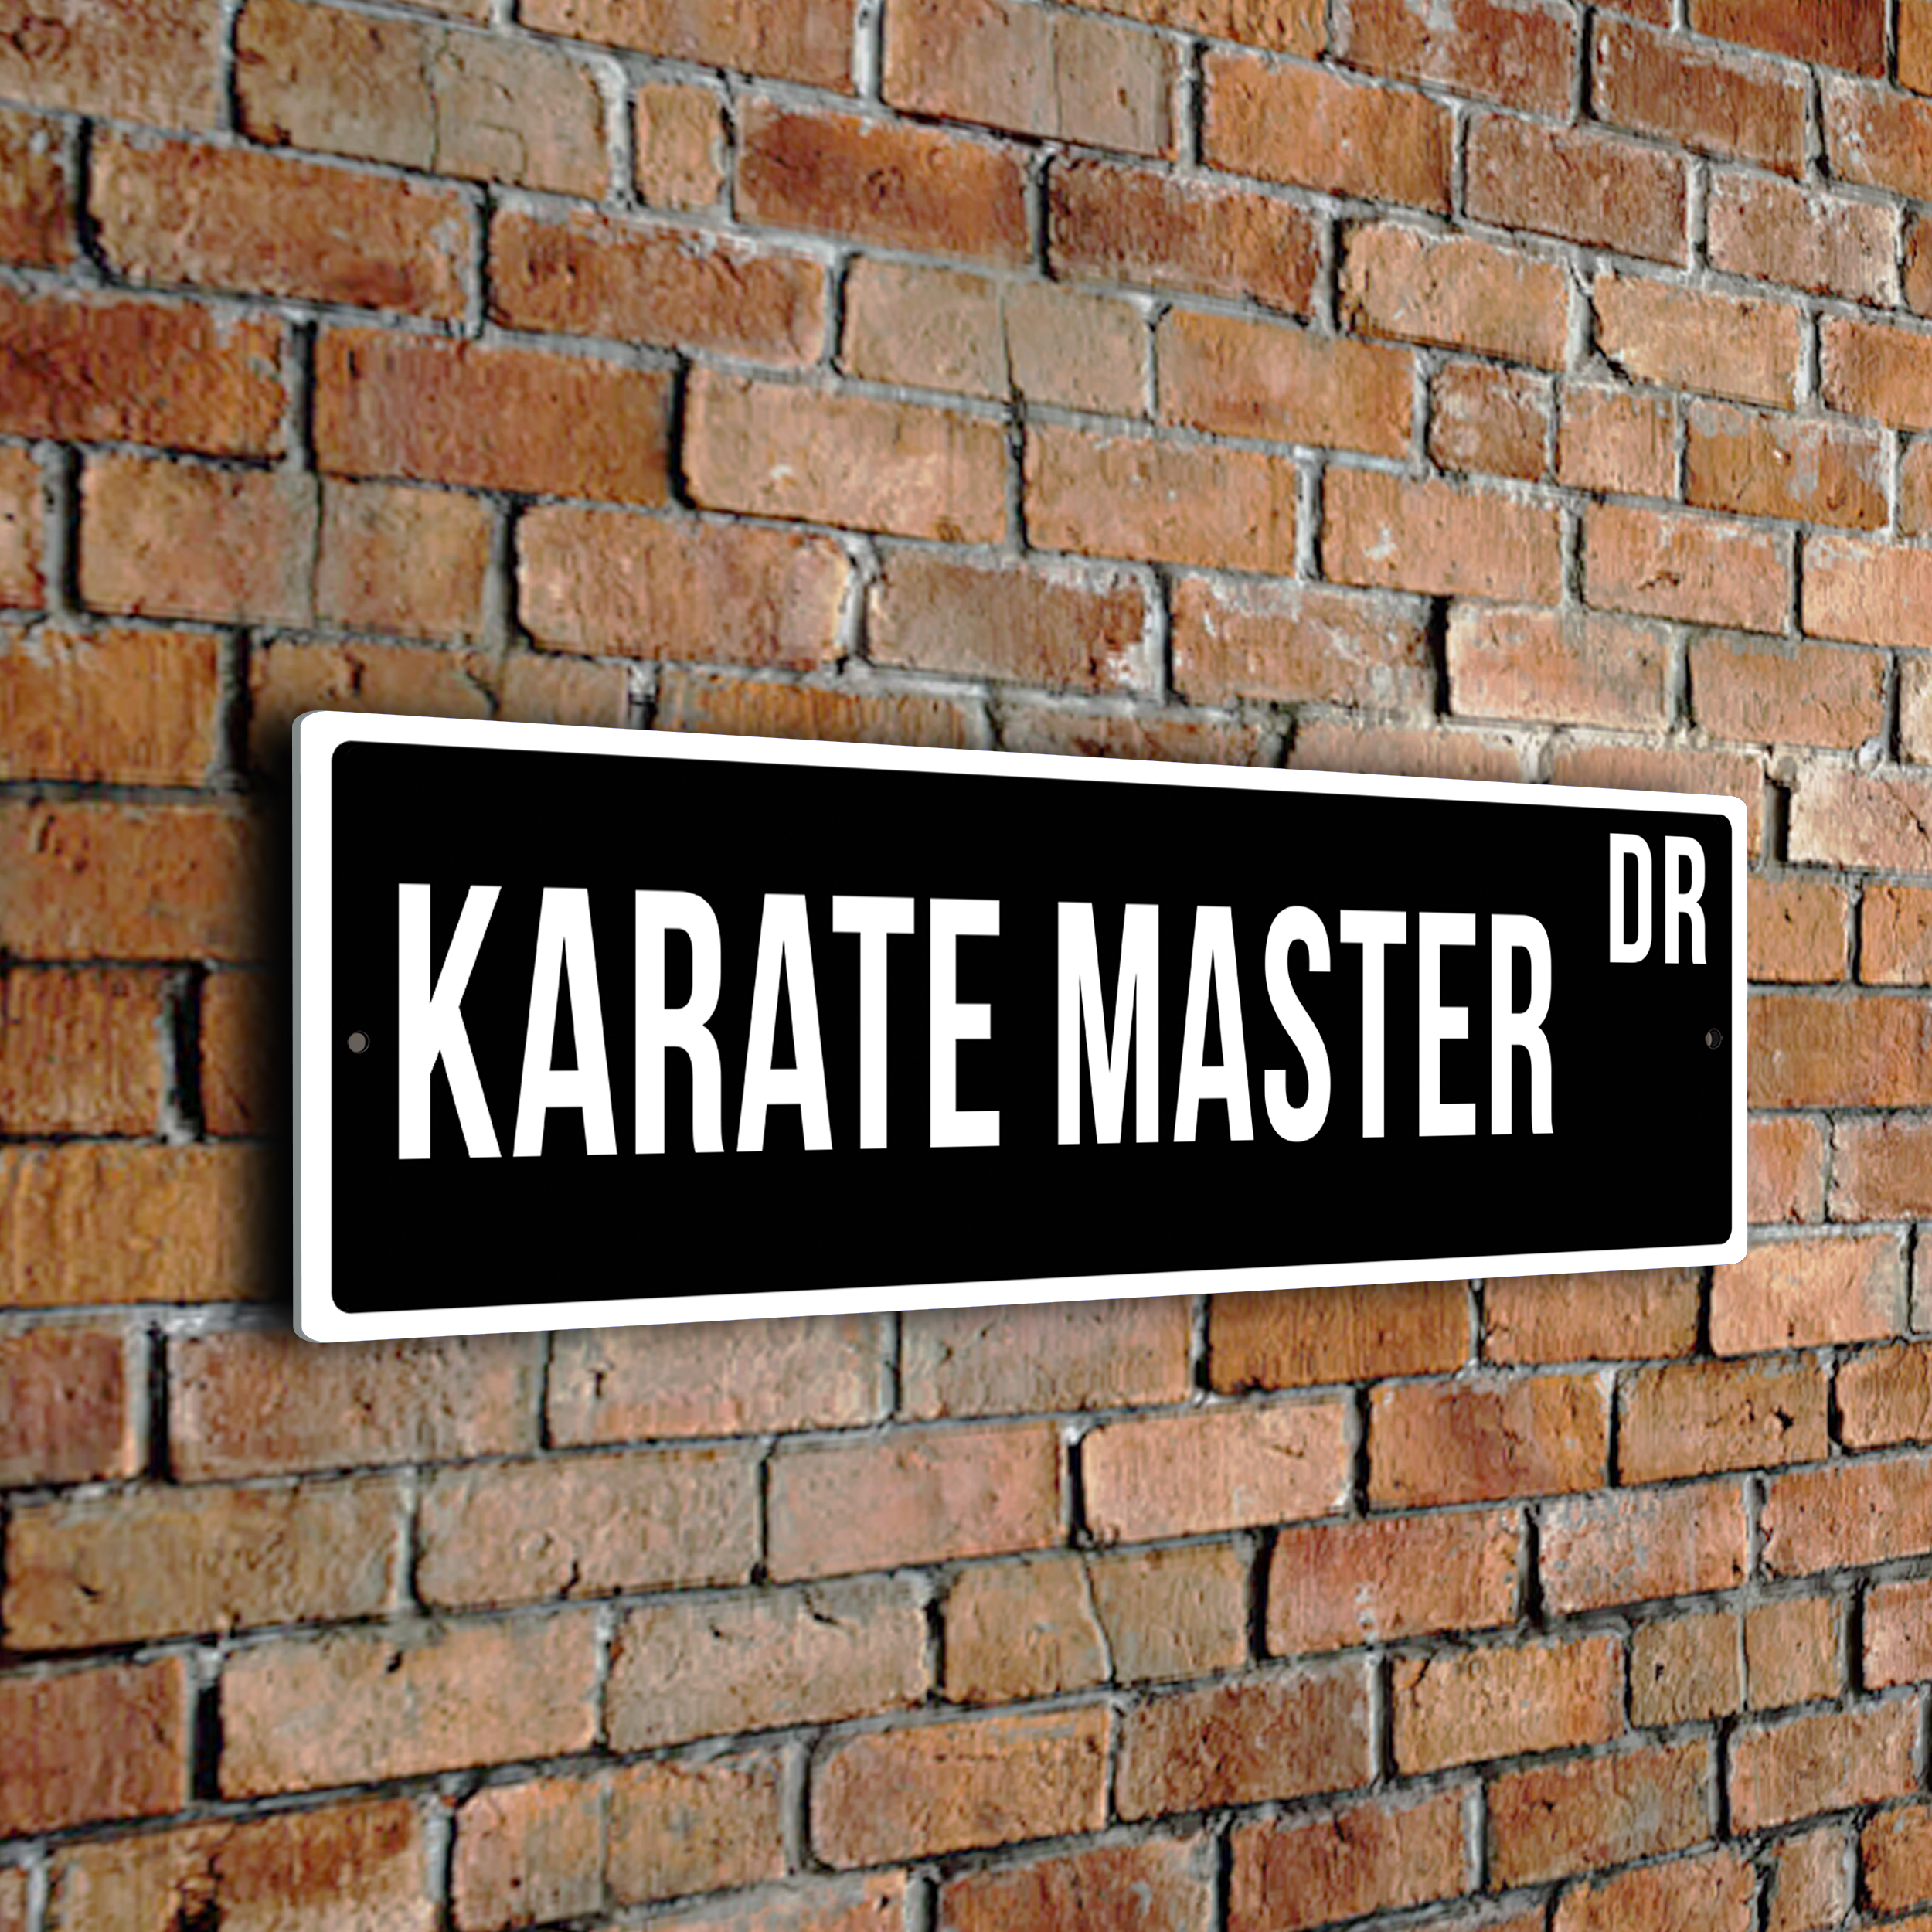 Karate-Master street sign